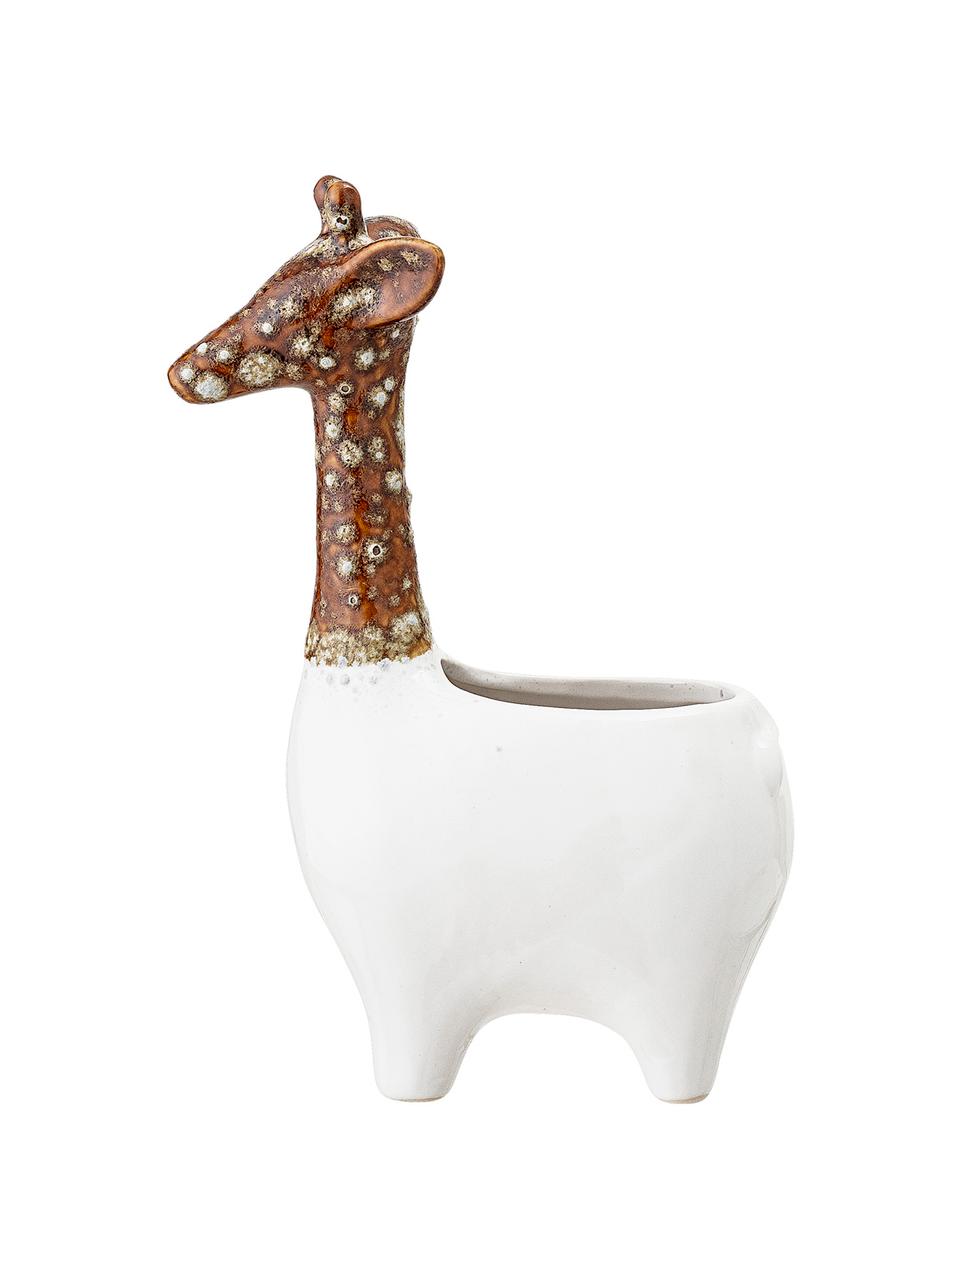 Handgefertigter Übertopf Giraffe aus Steingut, Steingut, Weiß, Braun, 17 x 25 cm